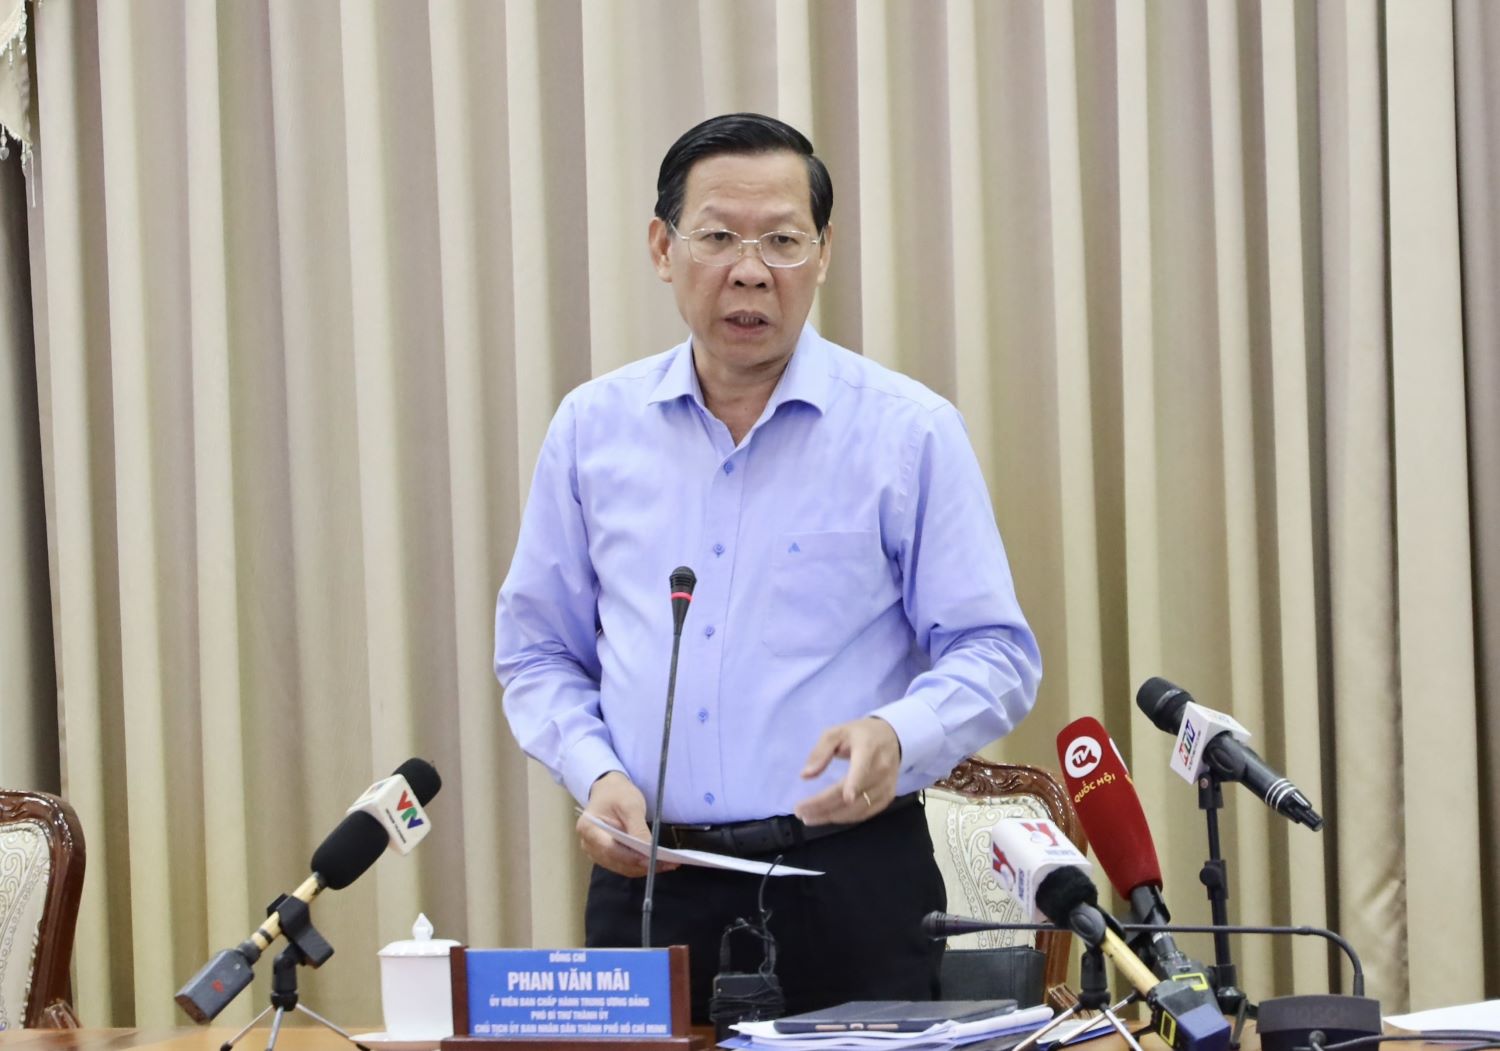 Chủ tịch UBND TPHCM Phan Văn Mãi.  Ảnh: Trung tâm báo chí